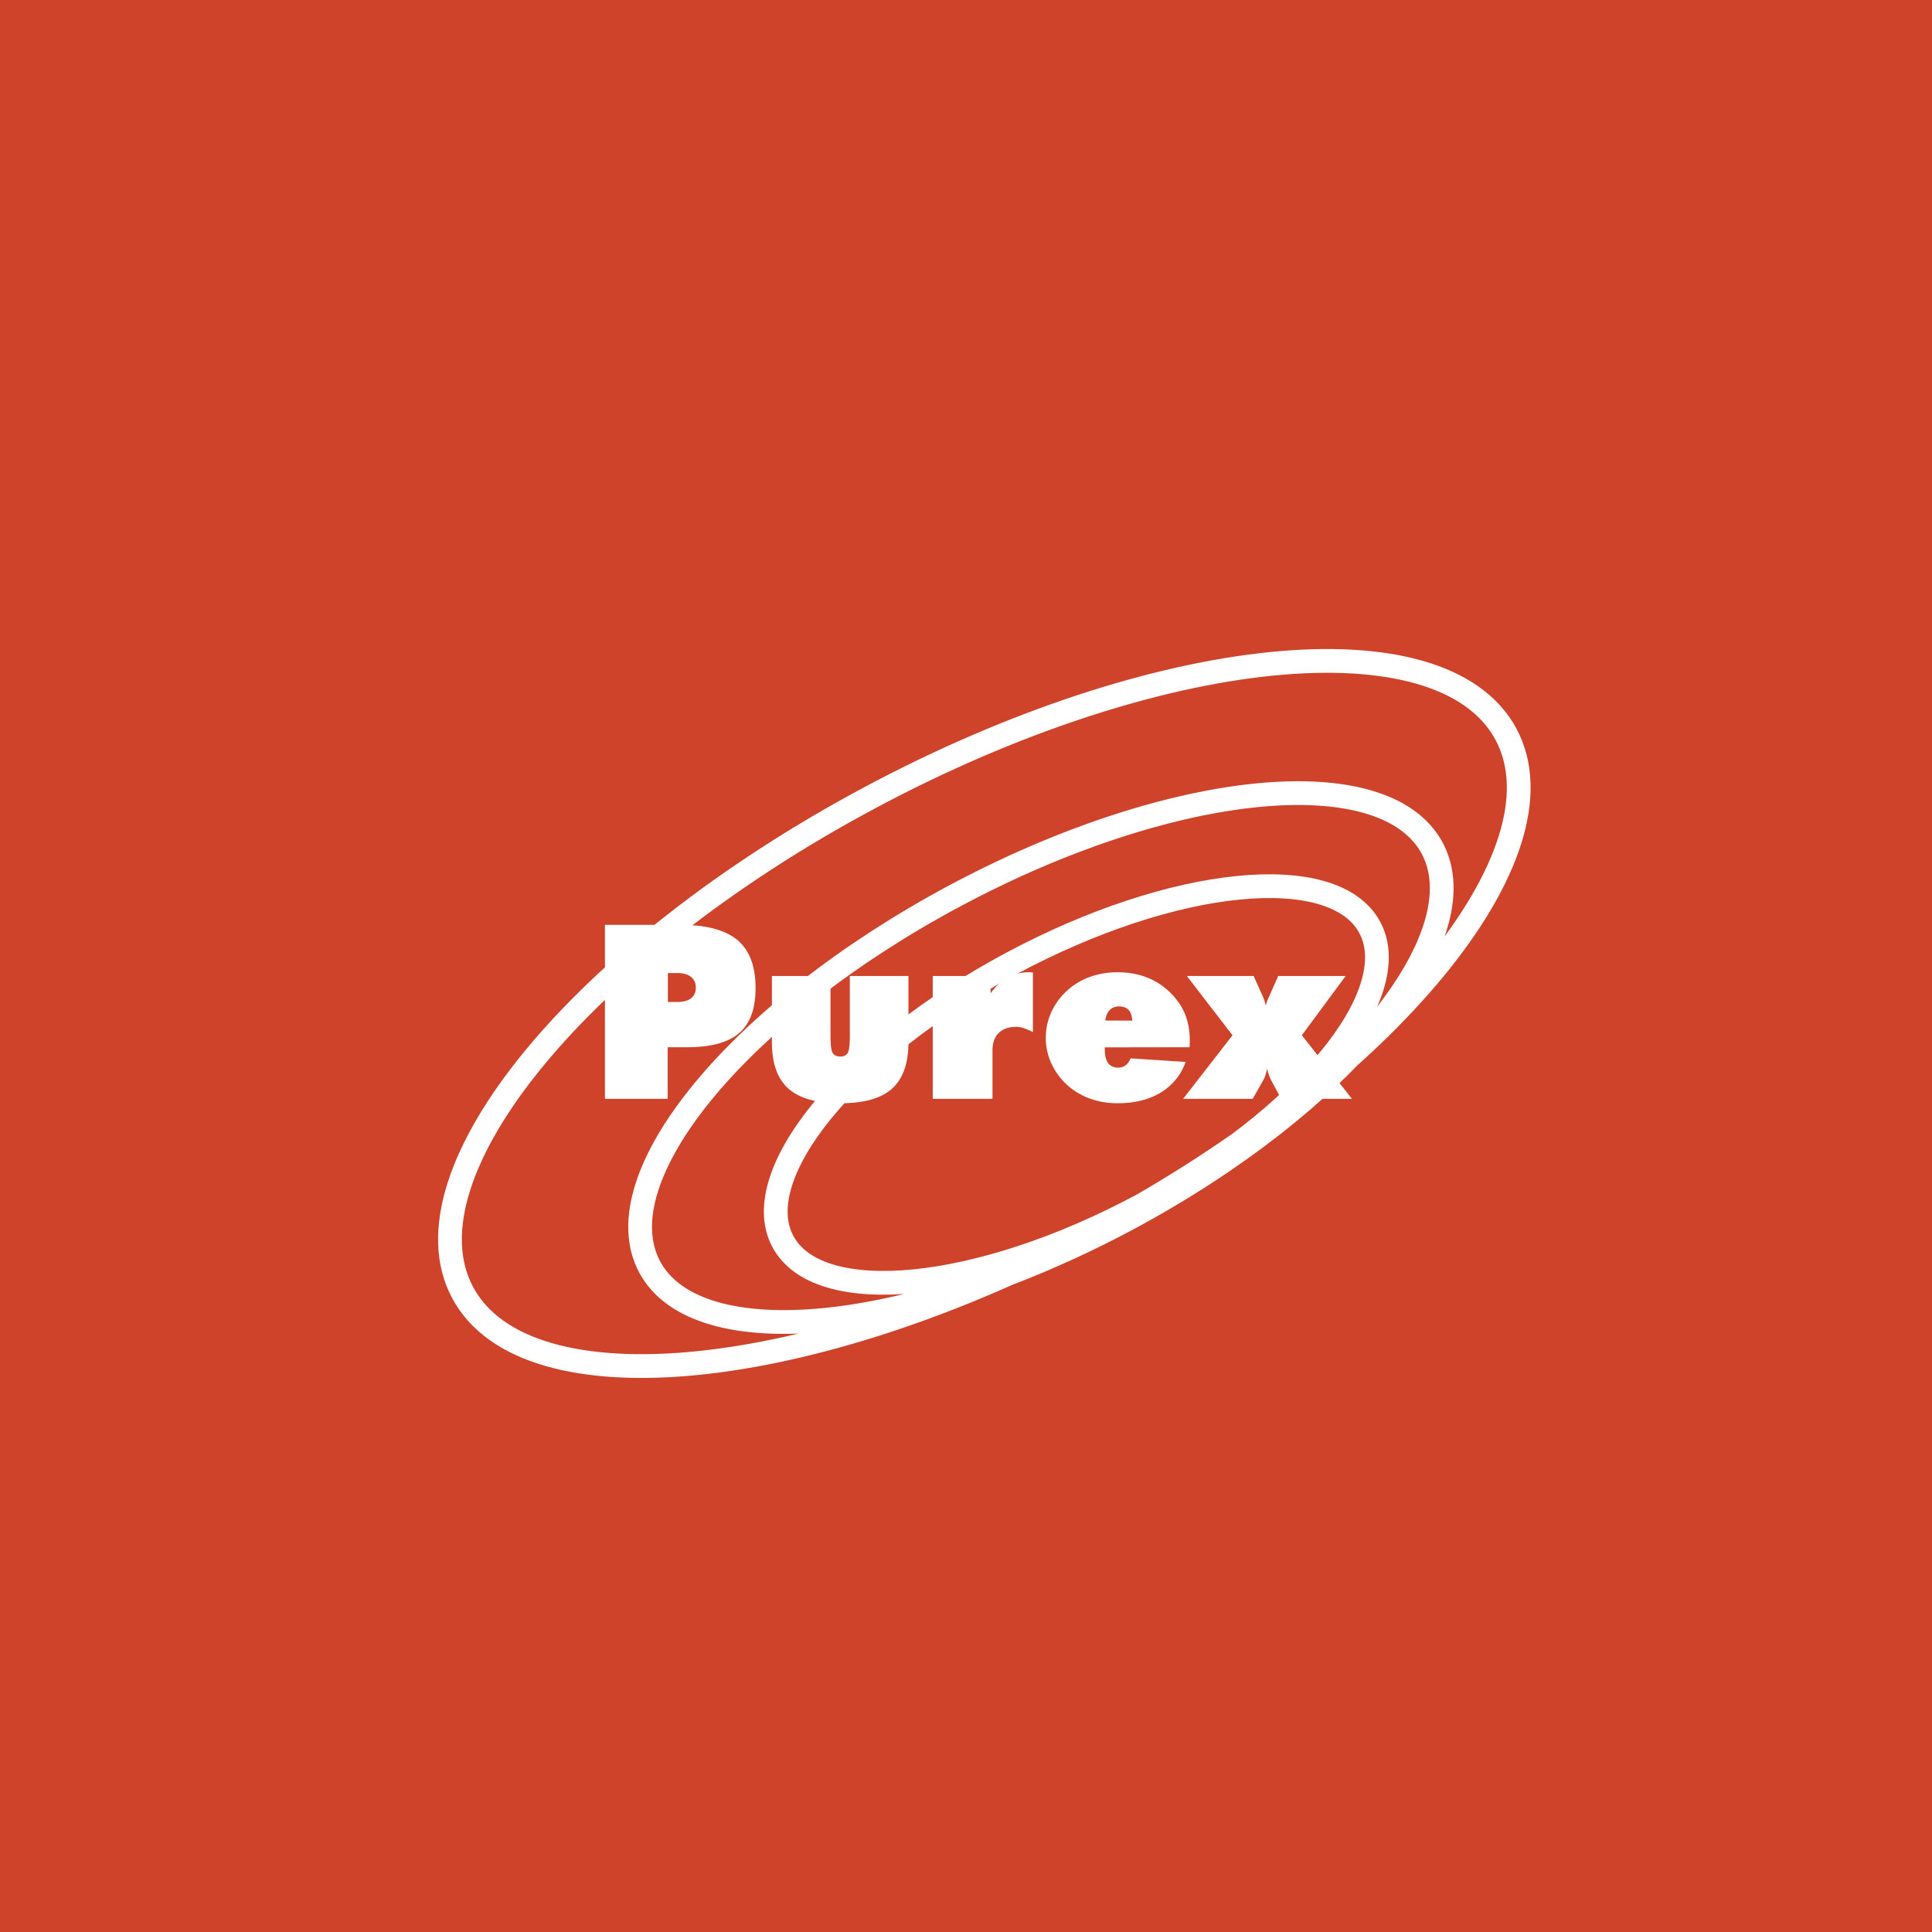 Purex (Laundry Detergent) logo colors